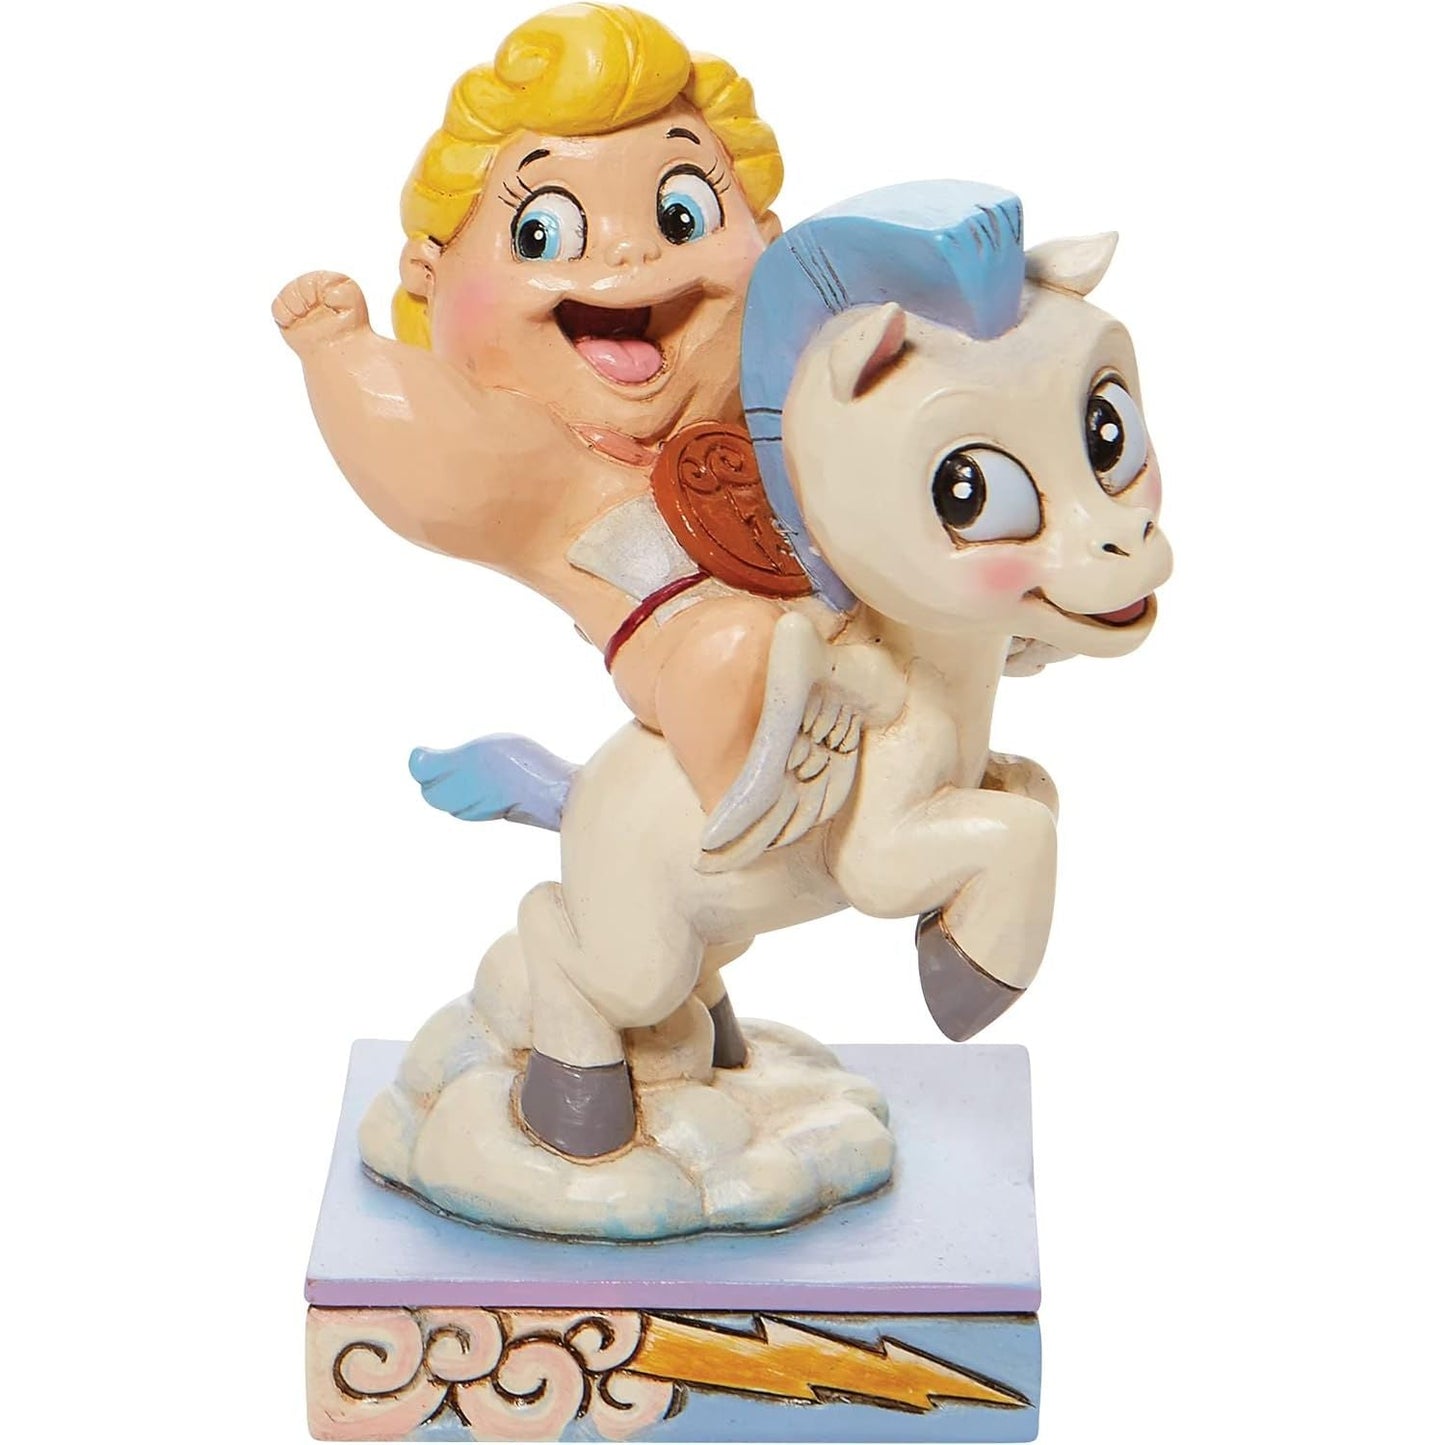 Jim Shore Disney Traditions Hercules and Pegasus Flying Figurine, 5.75"